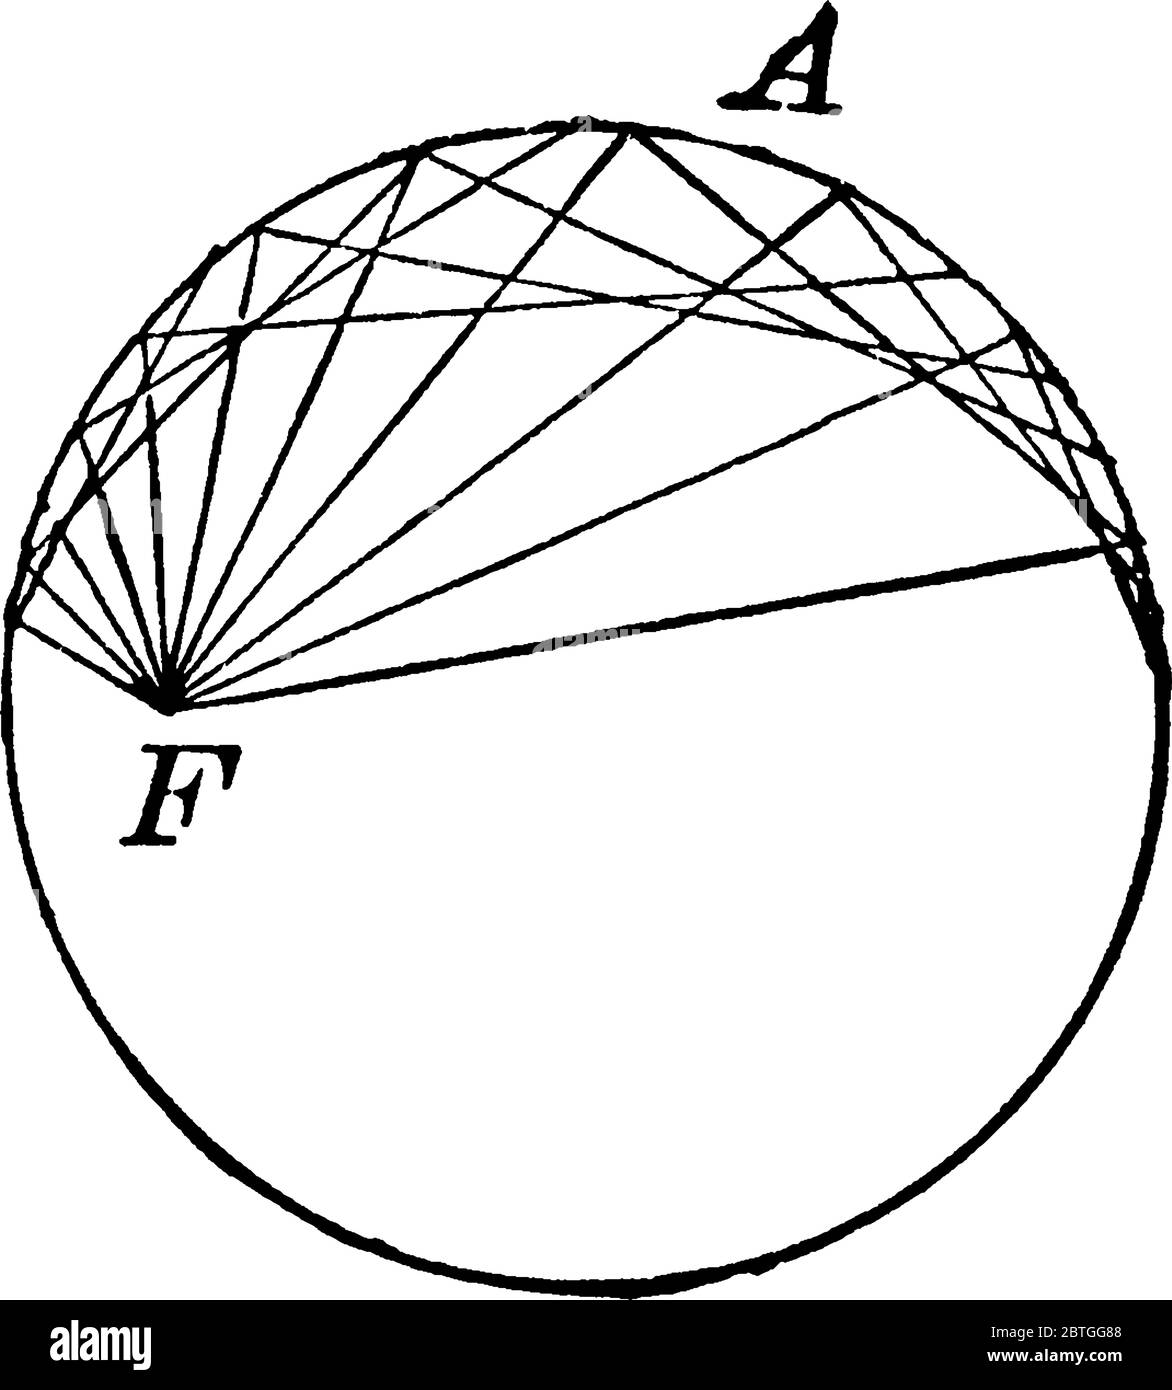 Il cerchio ausiliario di un cono è definito come il cerchio con il suo centro sull'asse dell'ellisse, che contiene i due vertici, disegno di linea vintage Illustrazione Vettoriale